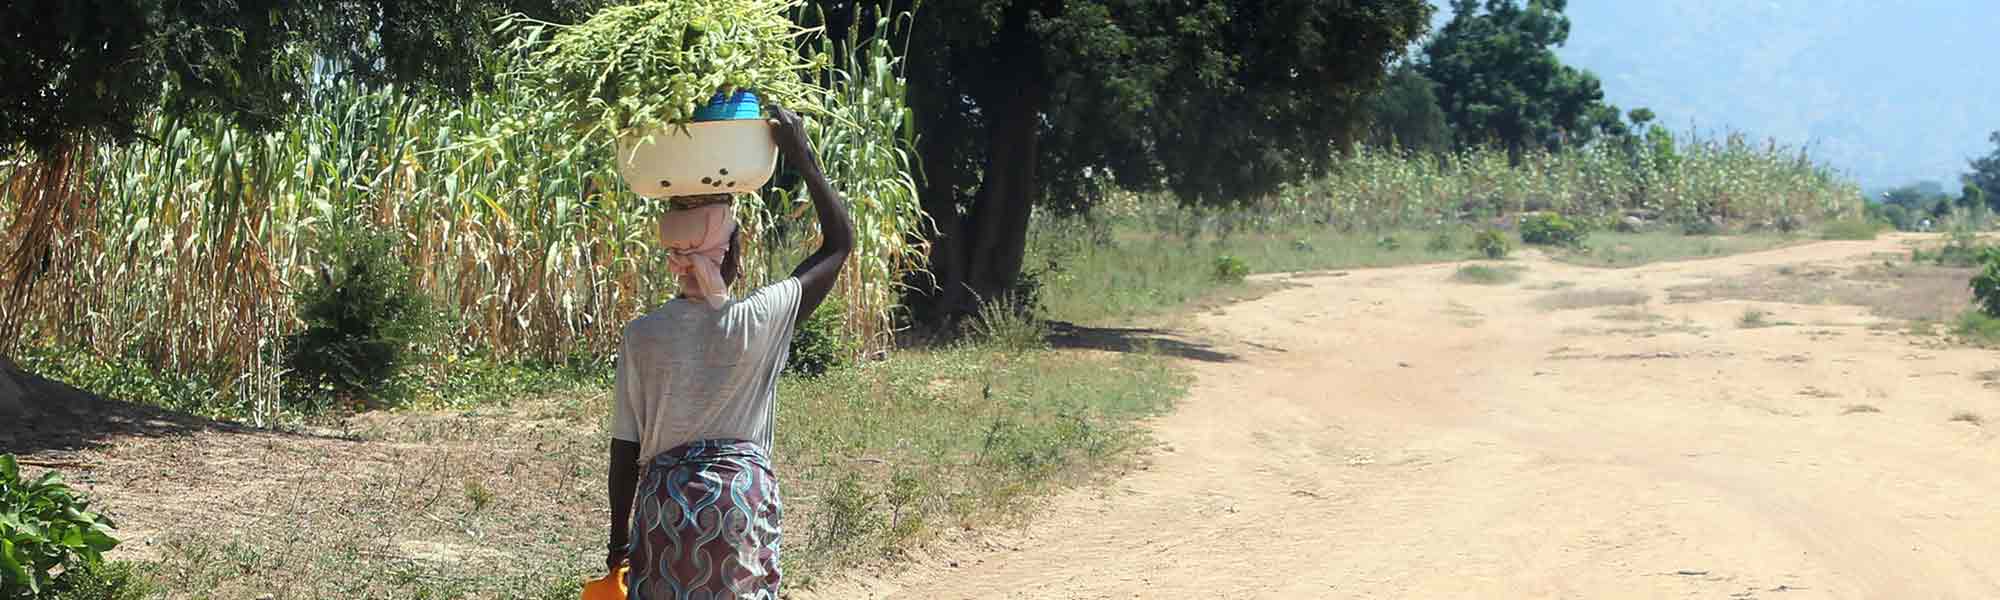 Kvinne bærer mat på hodet på landvei i Nigeria